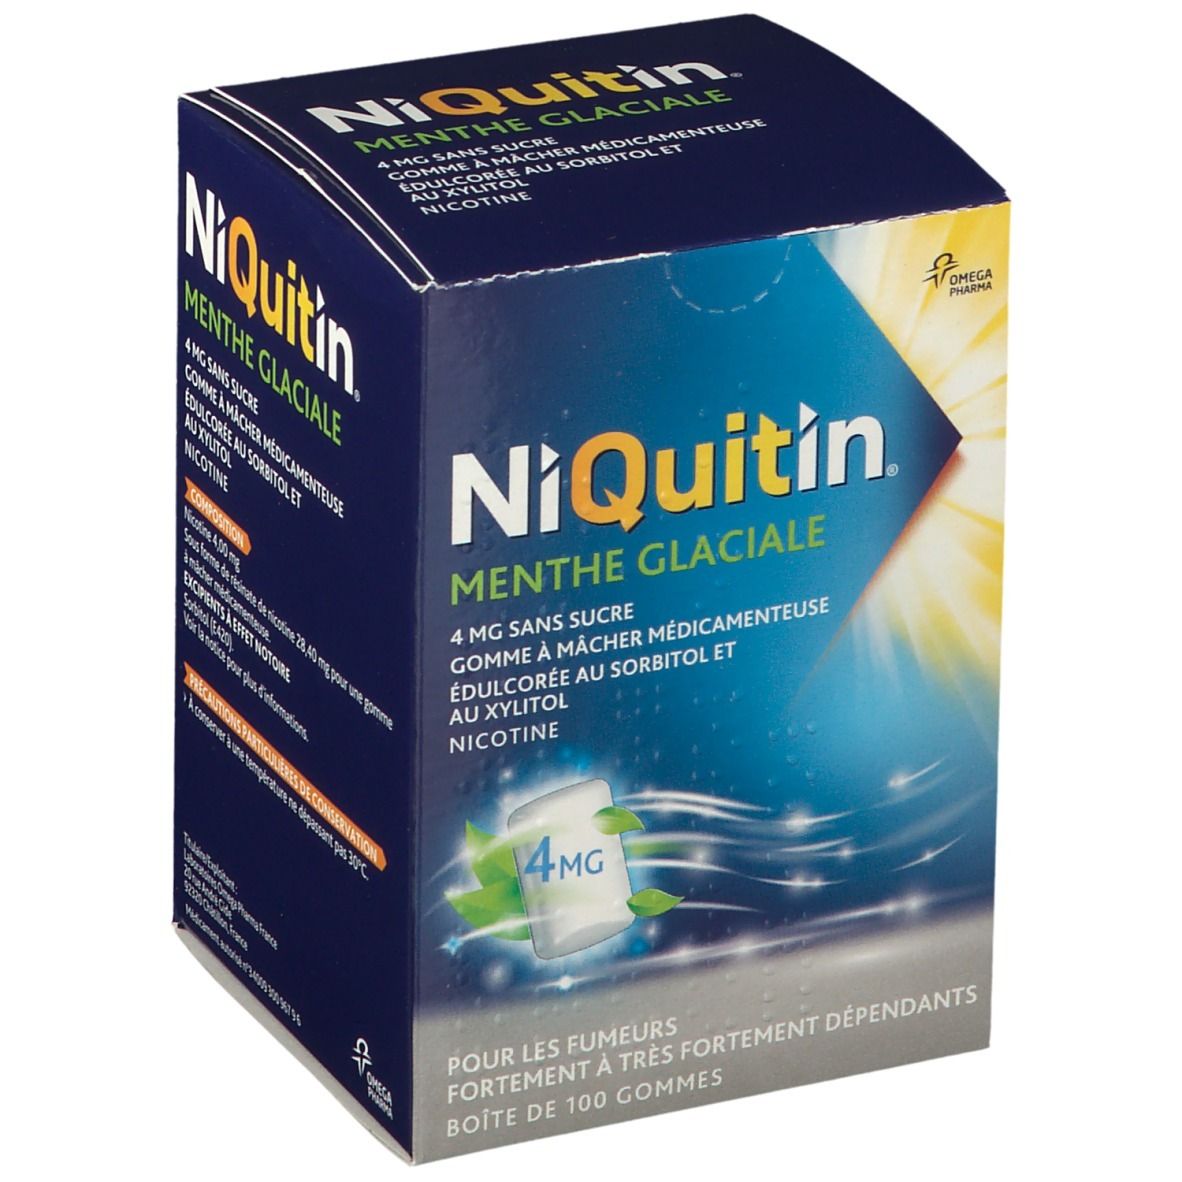 NiQuitin® Menthe Glaciale 4 mg sans sucres